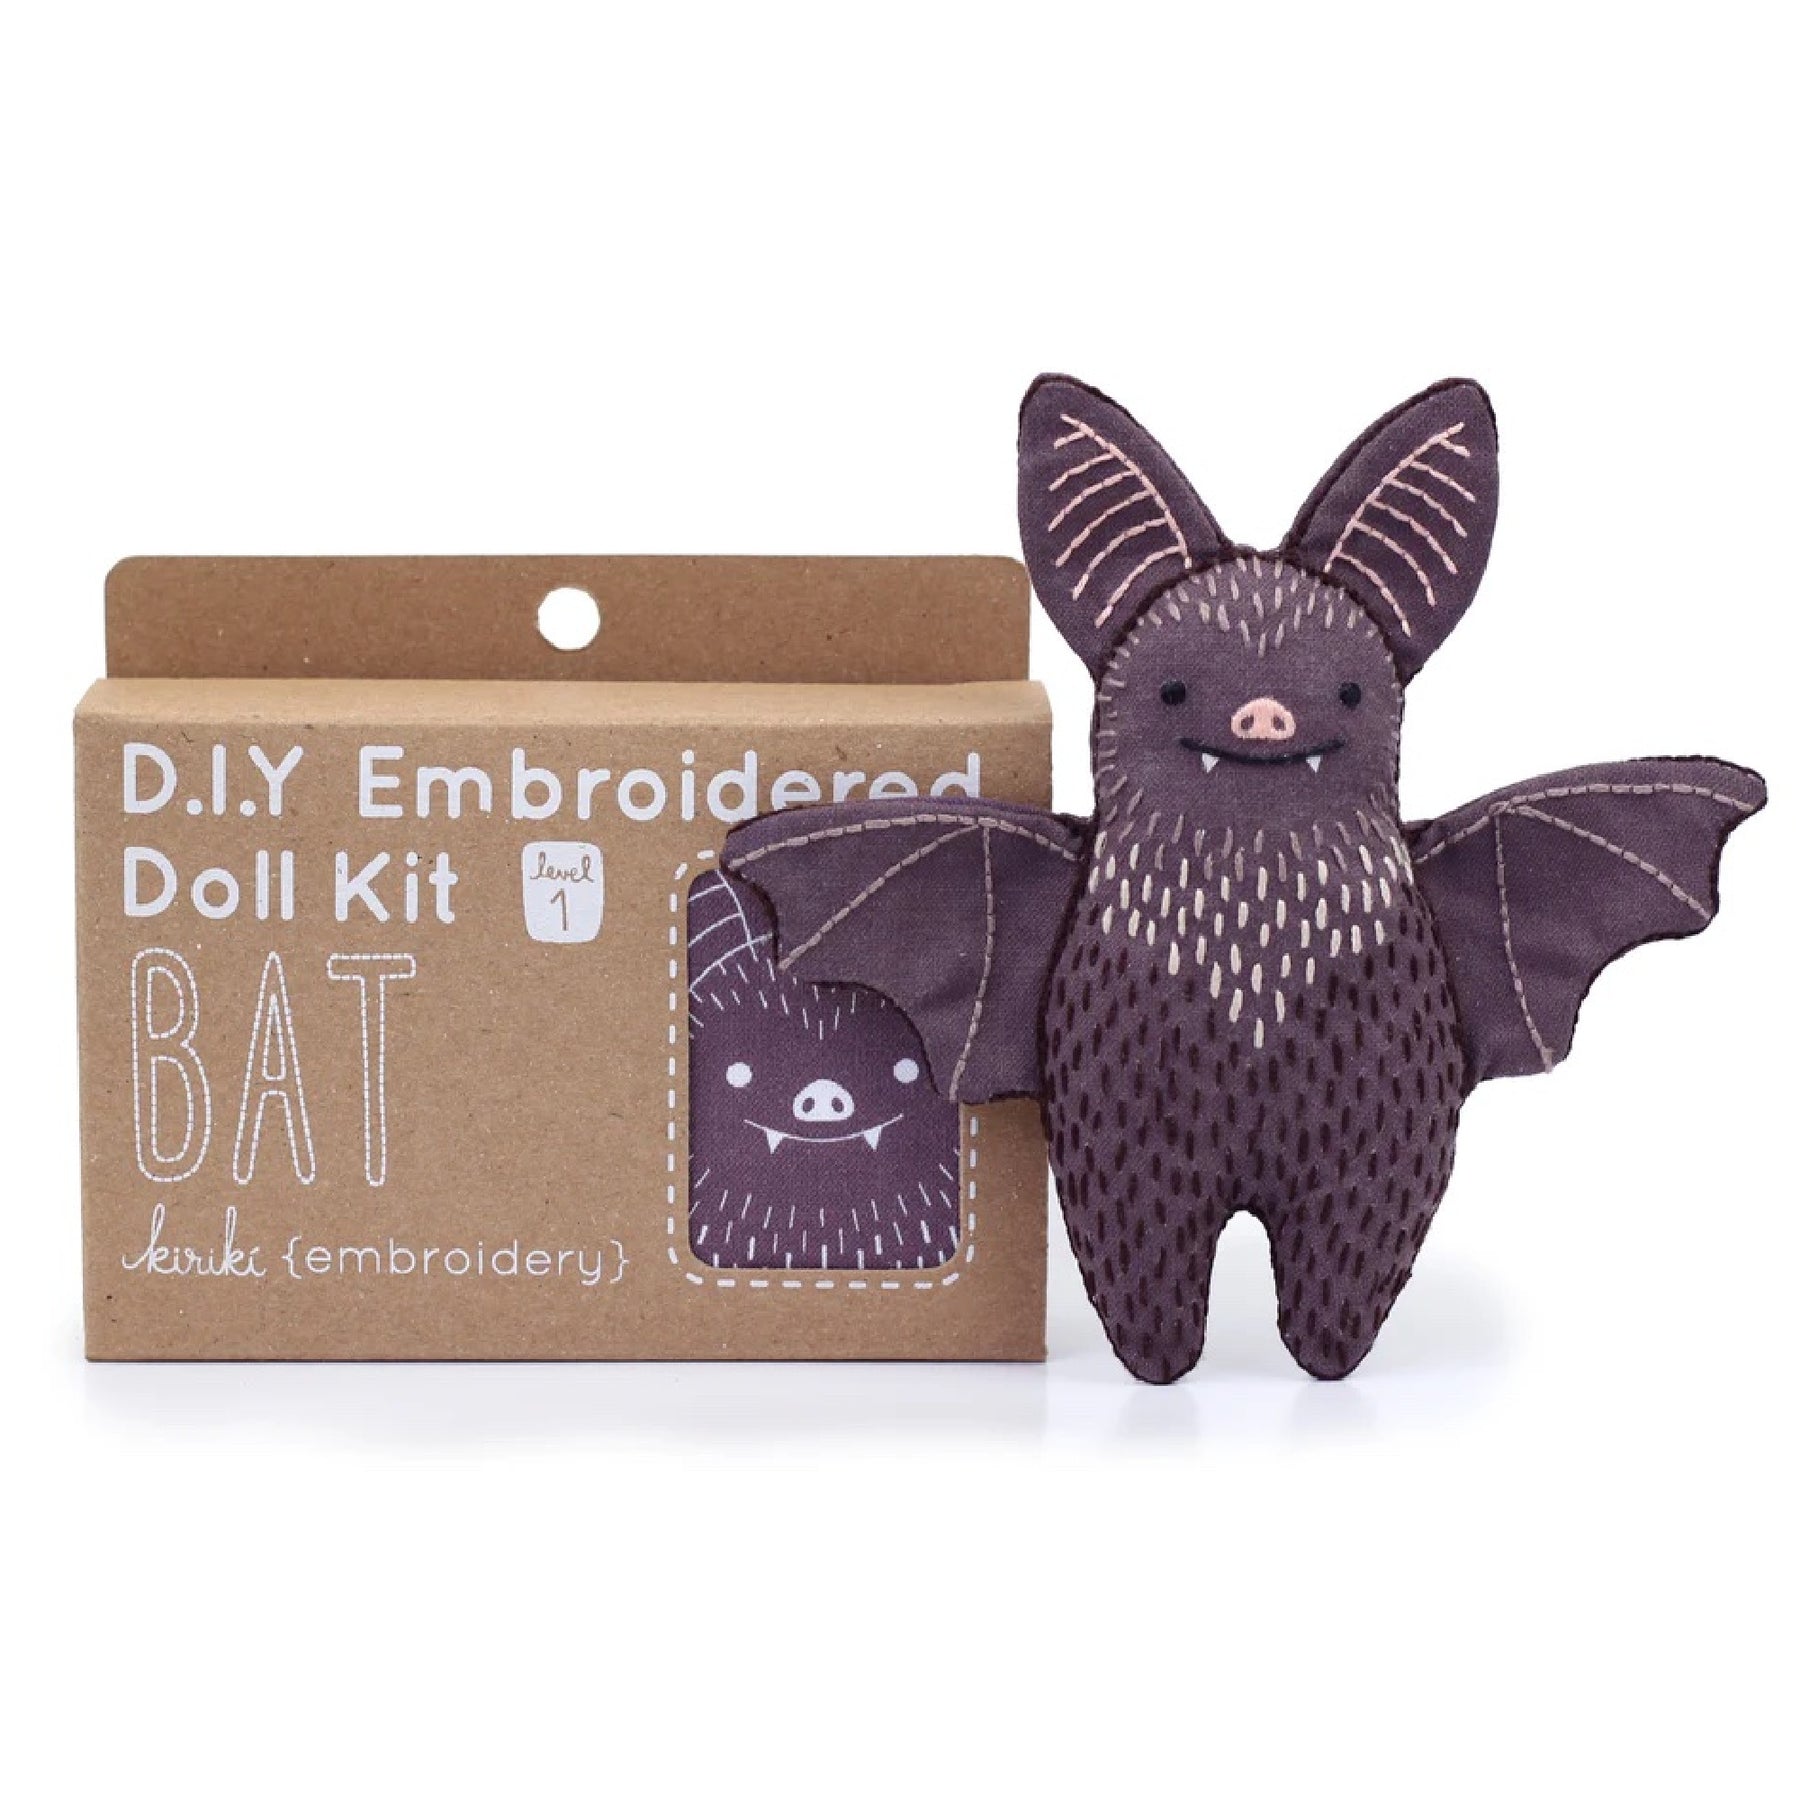 Bat Sewing KIT, Artist Pattern, Stuffed Toy Bat, Cute Bat Tutorials, Craft  Kits for Adults, Craft Kits for Kids 